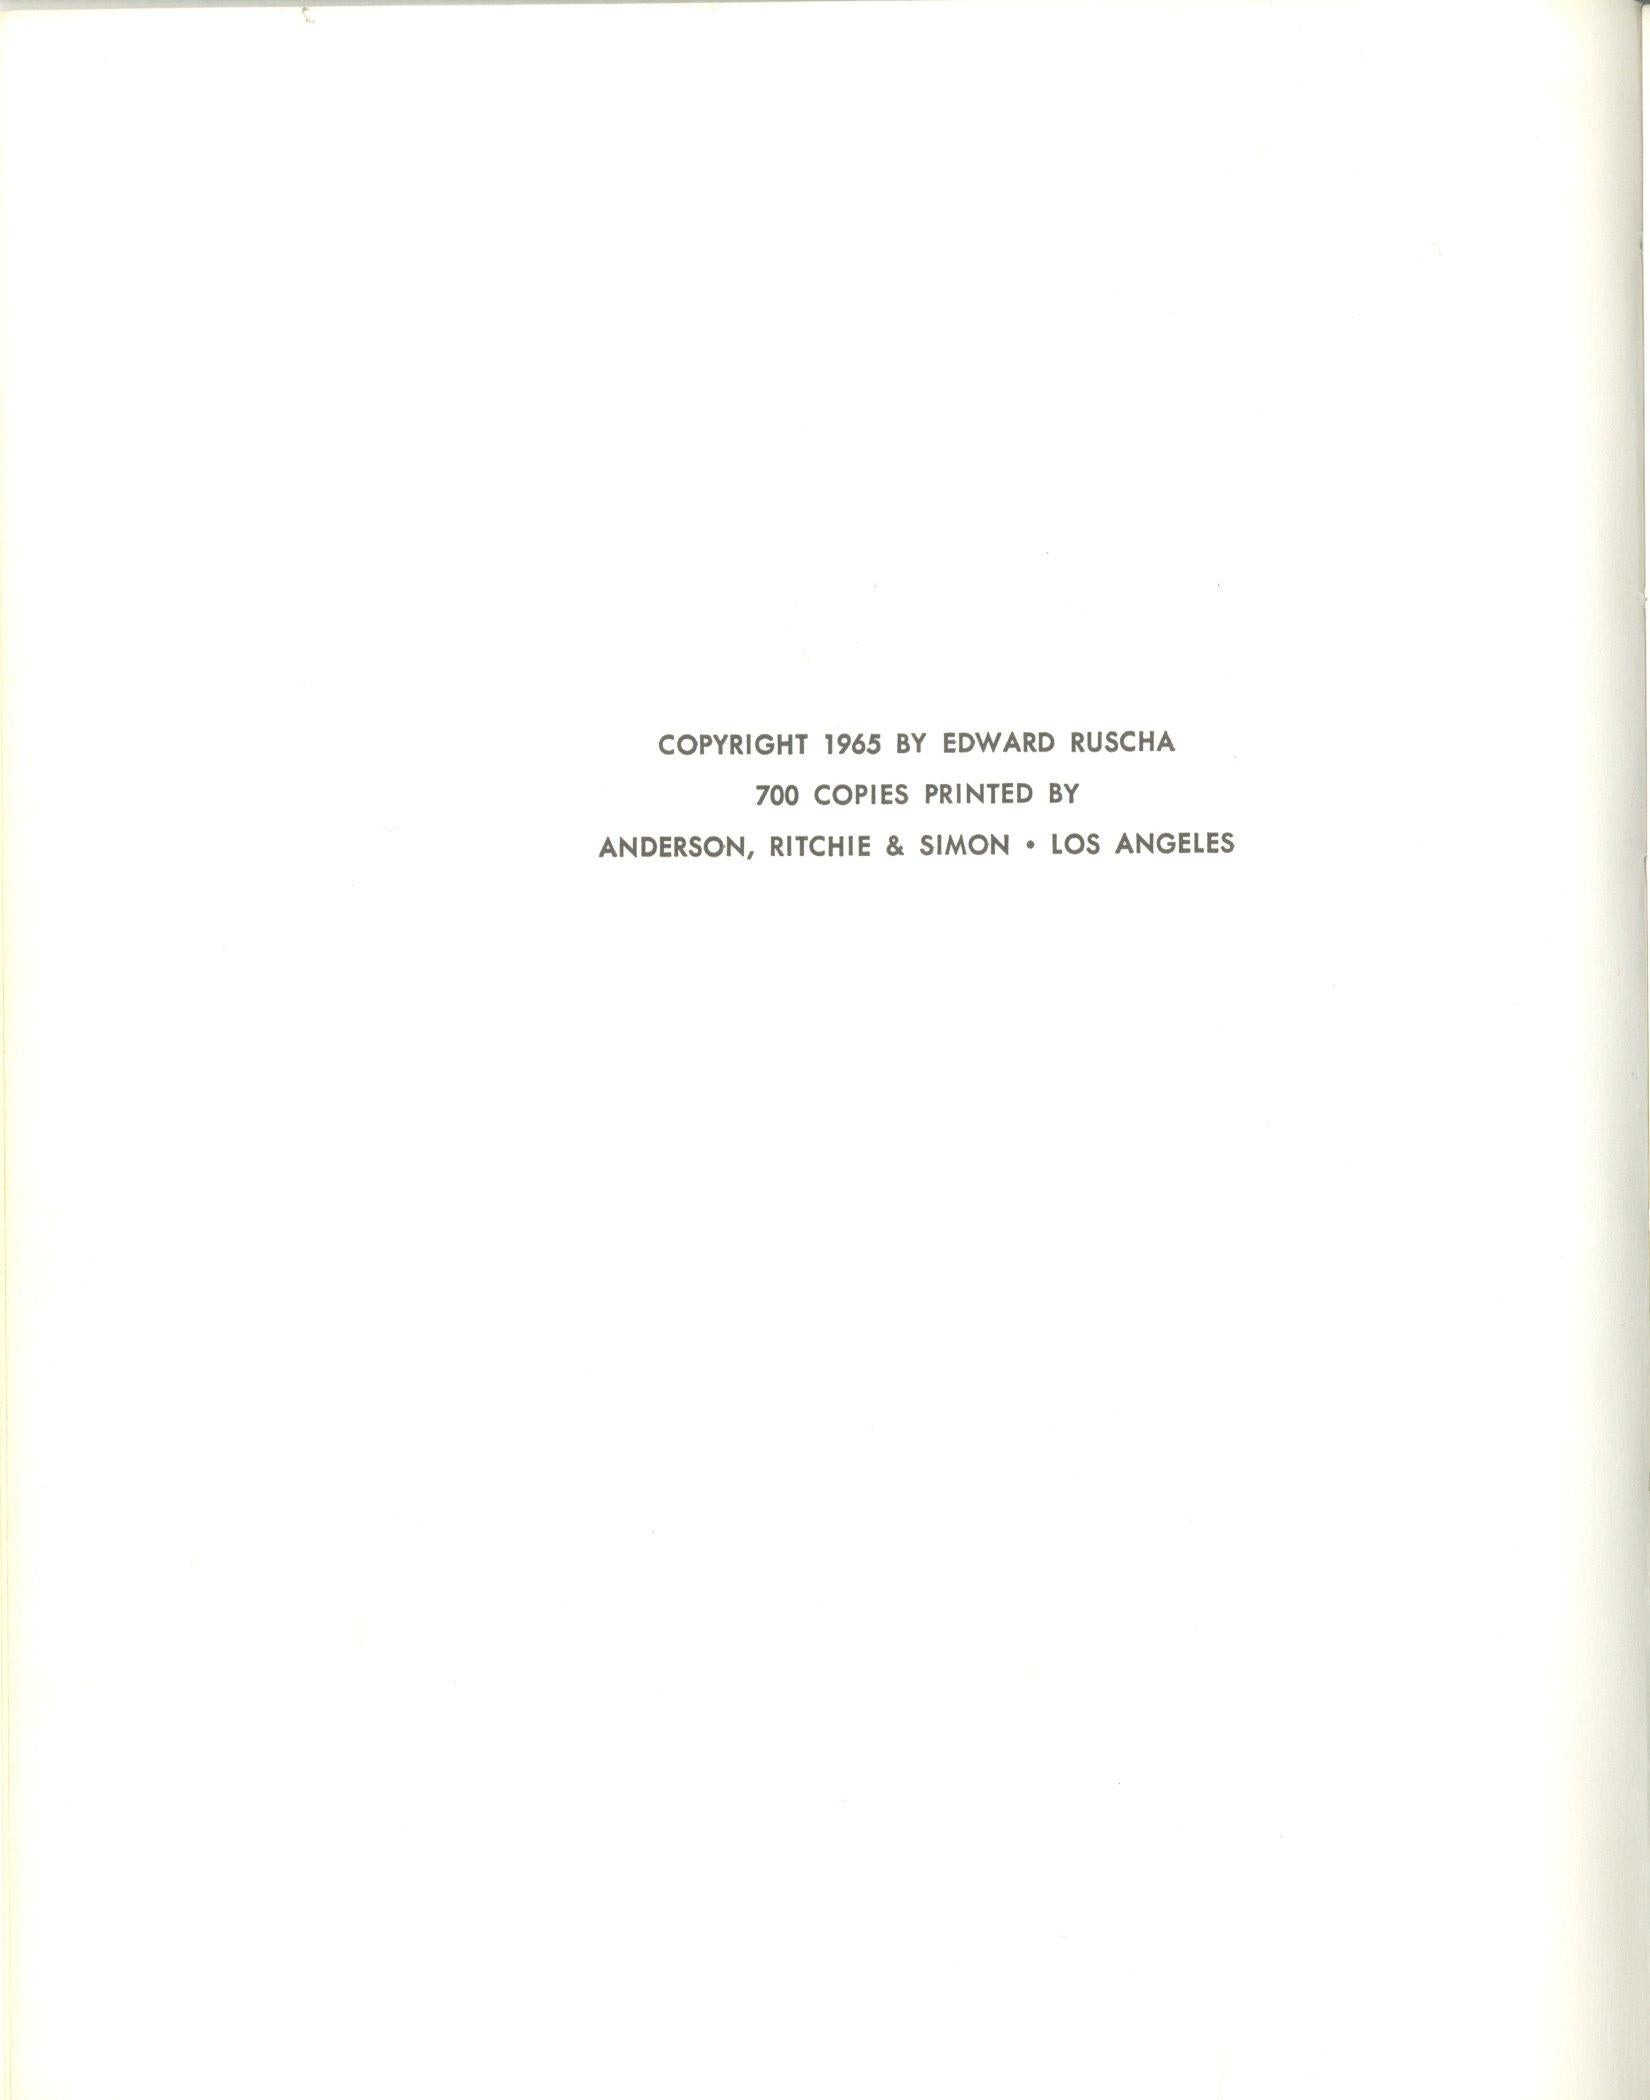 Ed Ruscha
Some Los Angeles Apartments (Non signé), 1965
Trueing Première édition du livre d'artiste : Édition limitée à 700 exemplaires
7 × 5 1/2 pouces
Non encadré
Un livre d'artiste rare et insaisissable des années 1960. C'est un cadeau